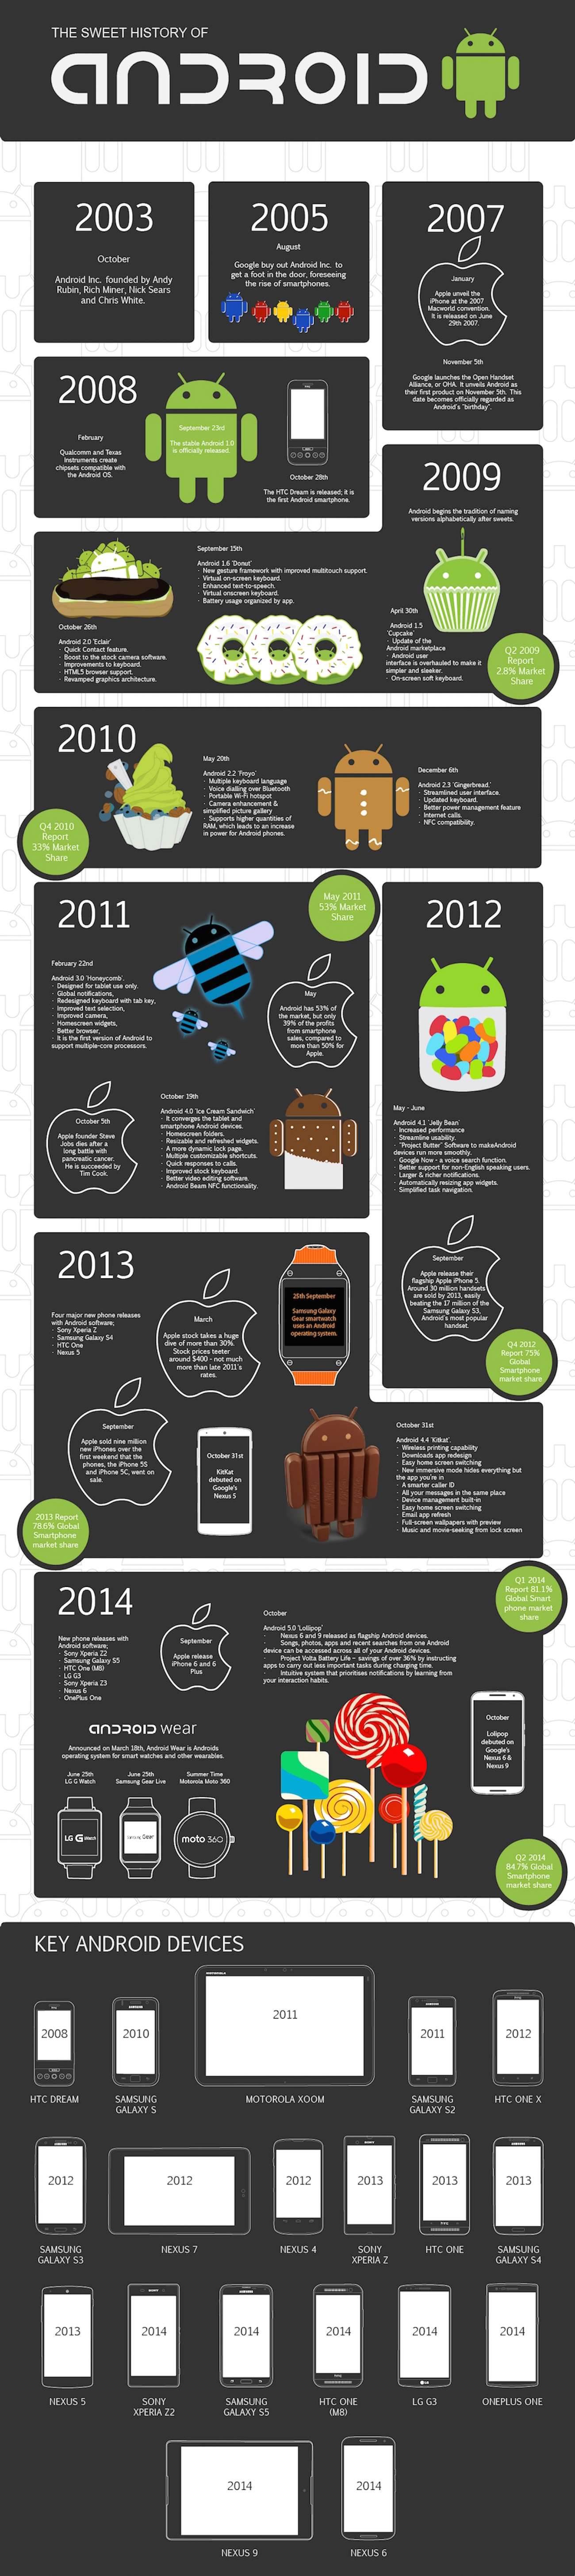 Historia Androida na infografice polecane, ciekawostki Historia Androida, historia, Andorid  Android to system operacyjny urządzeń mobilnych takich jak smartfony, tablety, czy notebooki. System został wydany w roku 2008, czyli rok po iOS. Andro